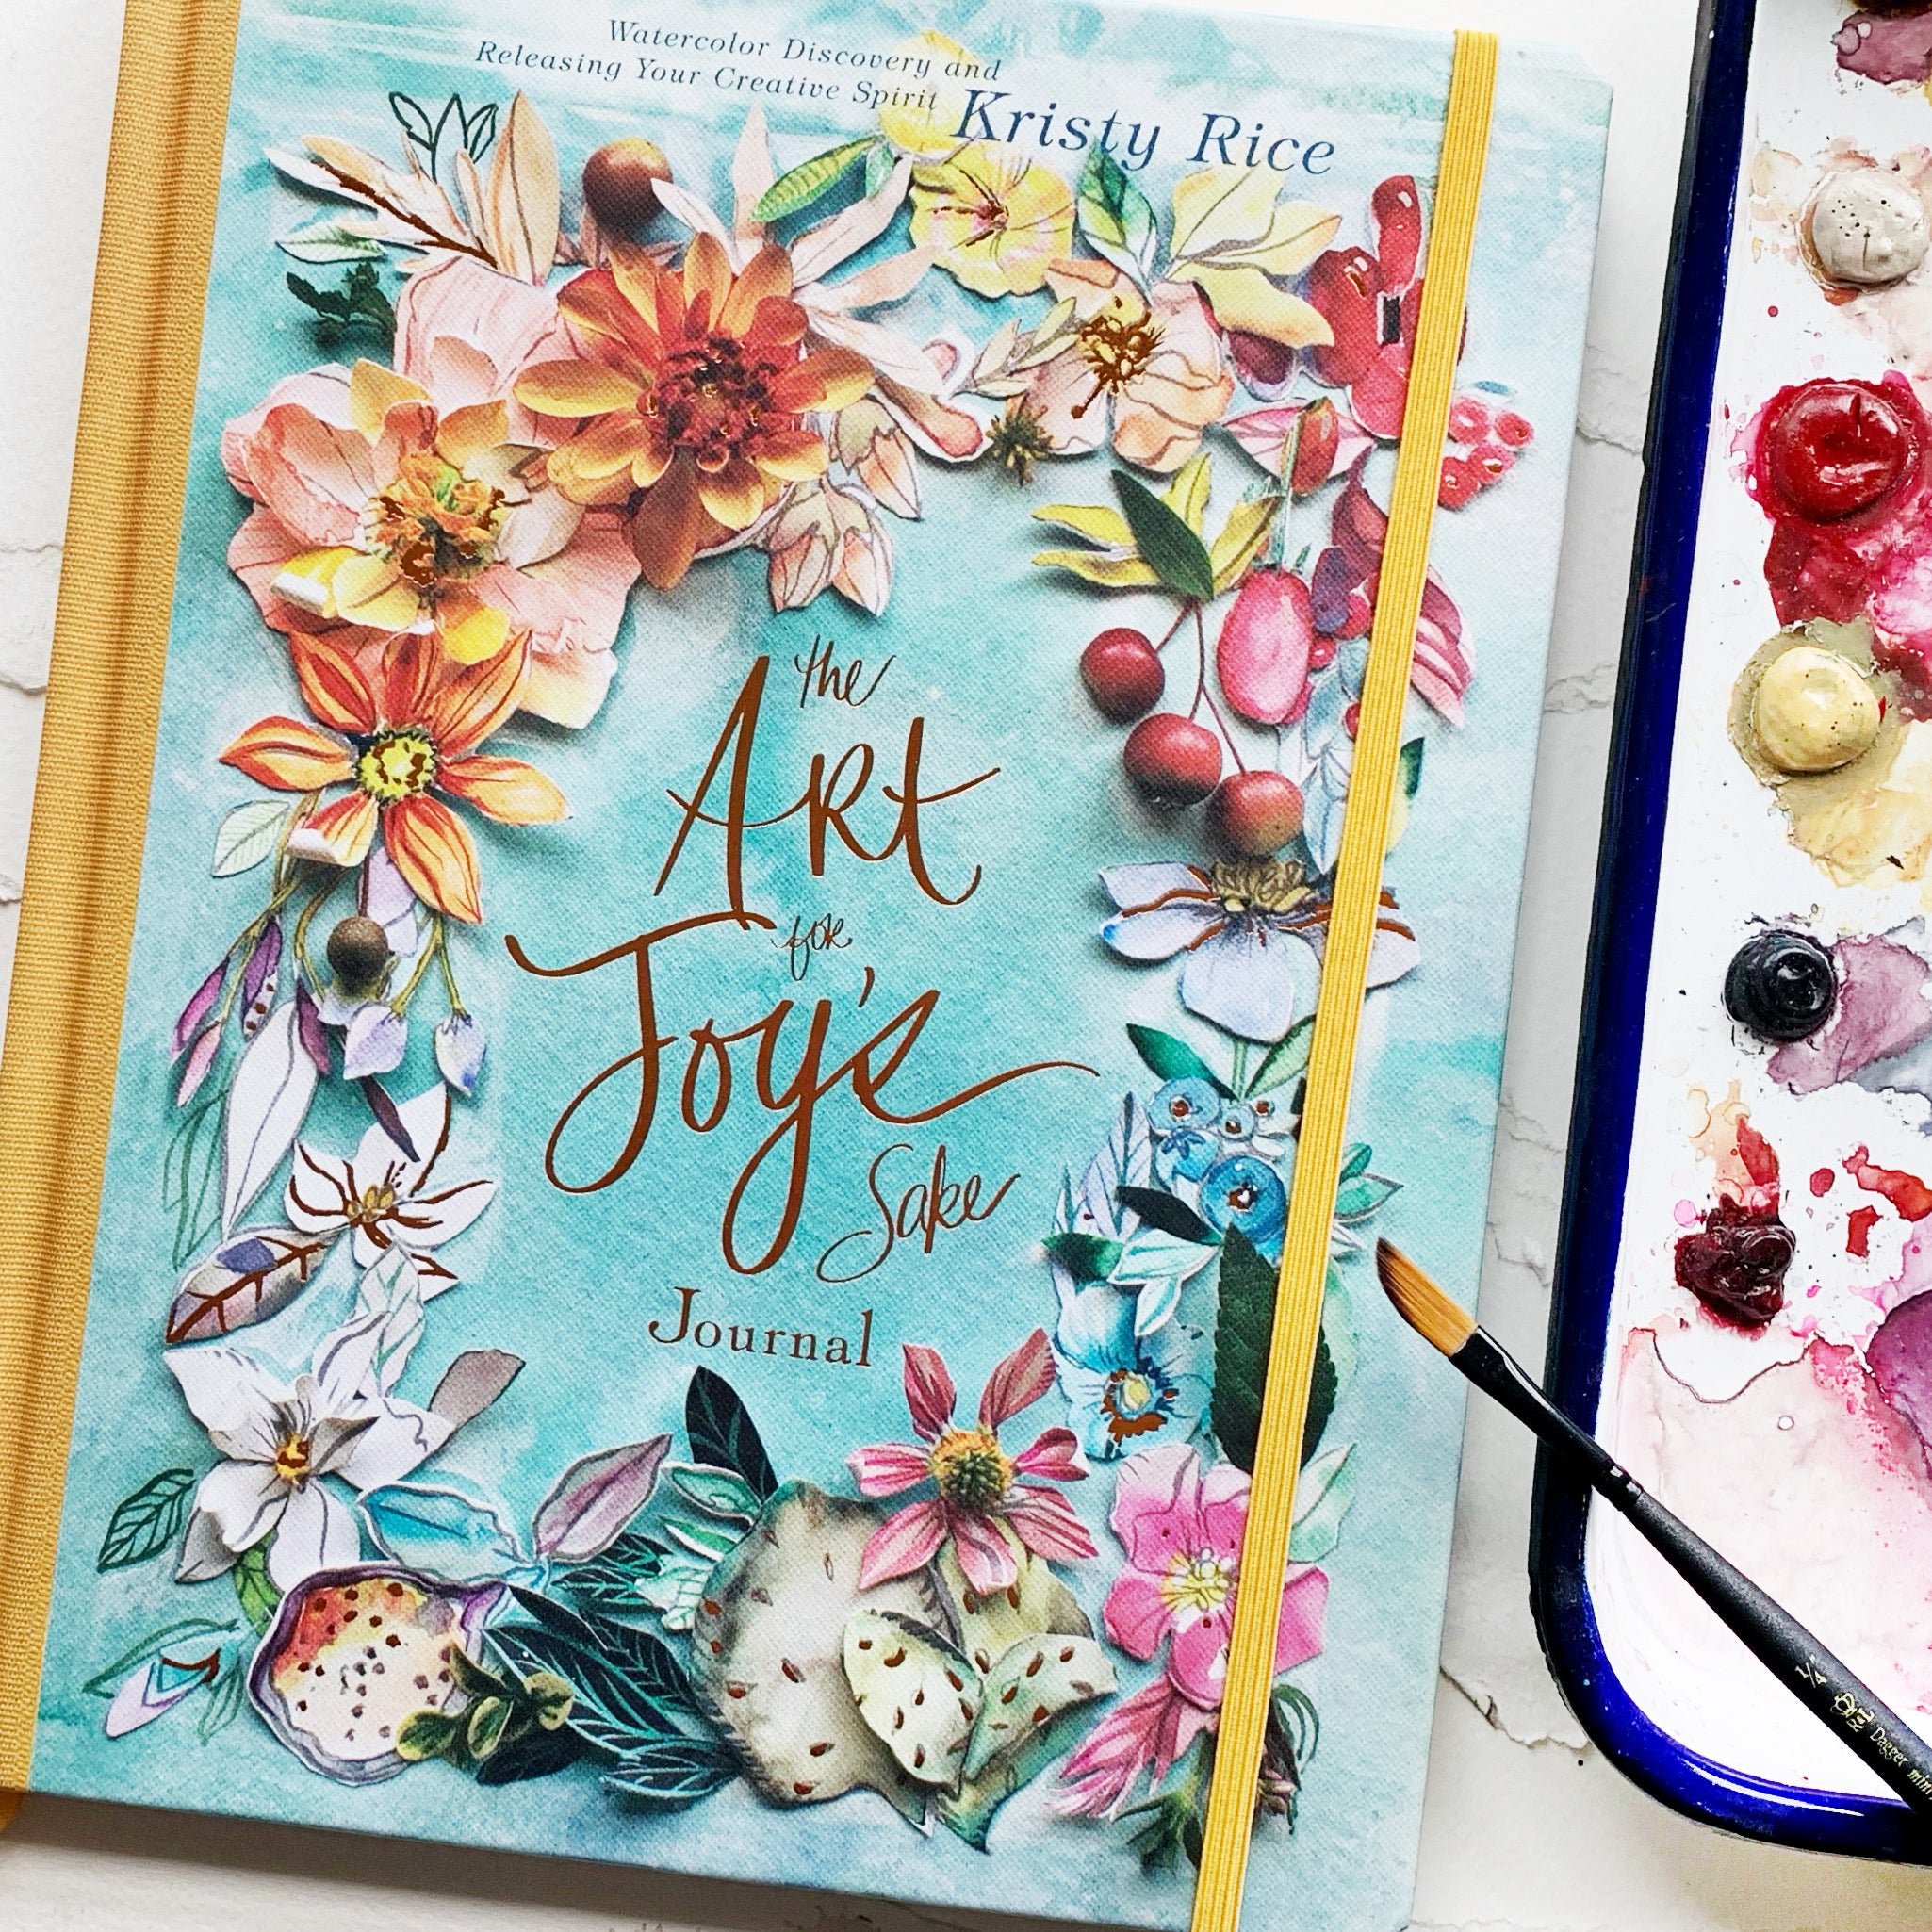 The Art for Joy’s Sake Journal